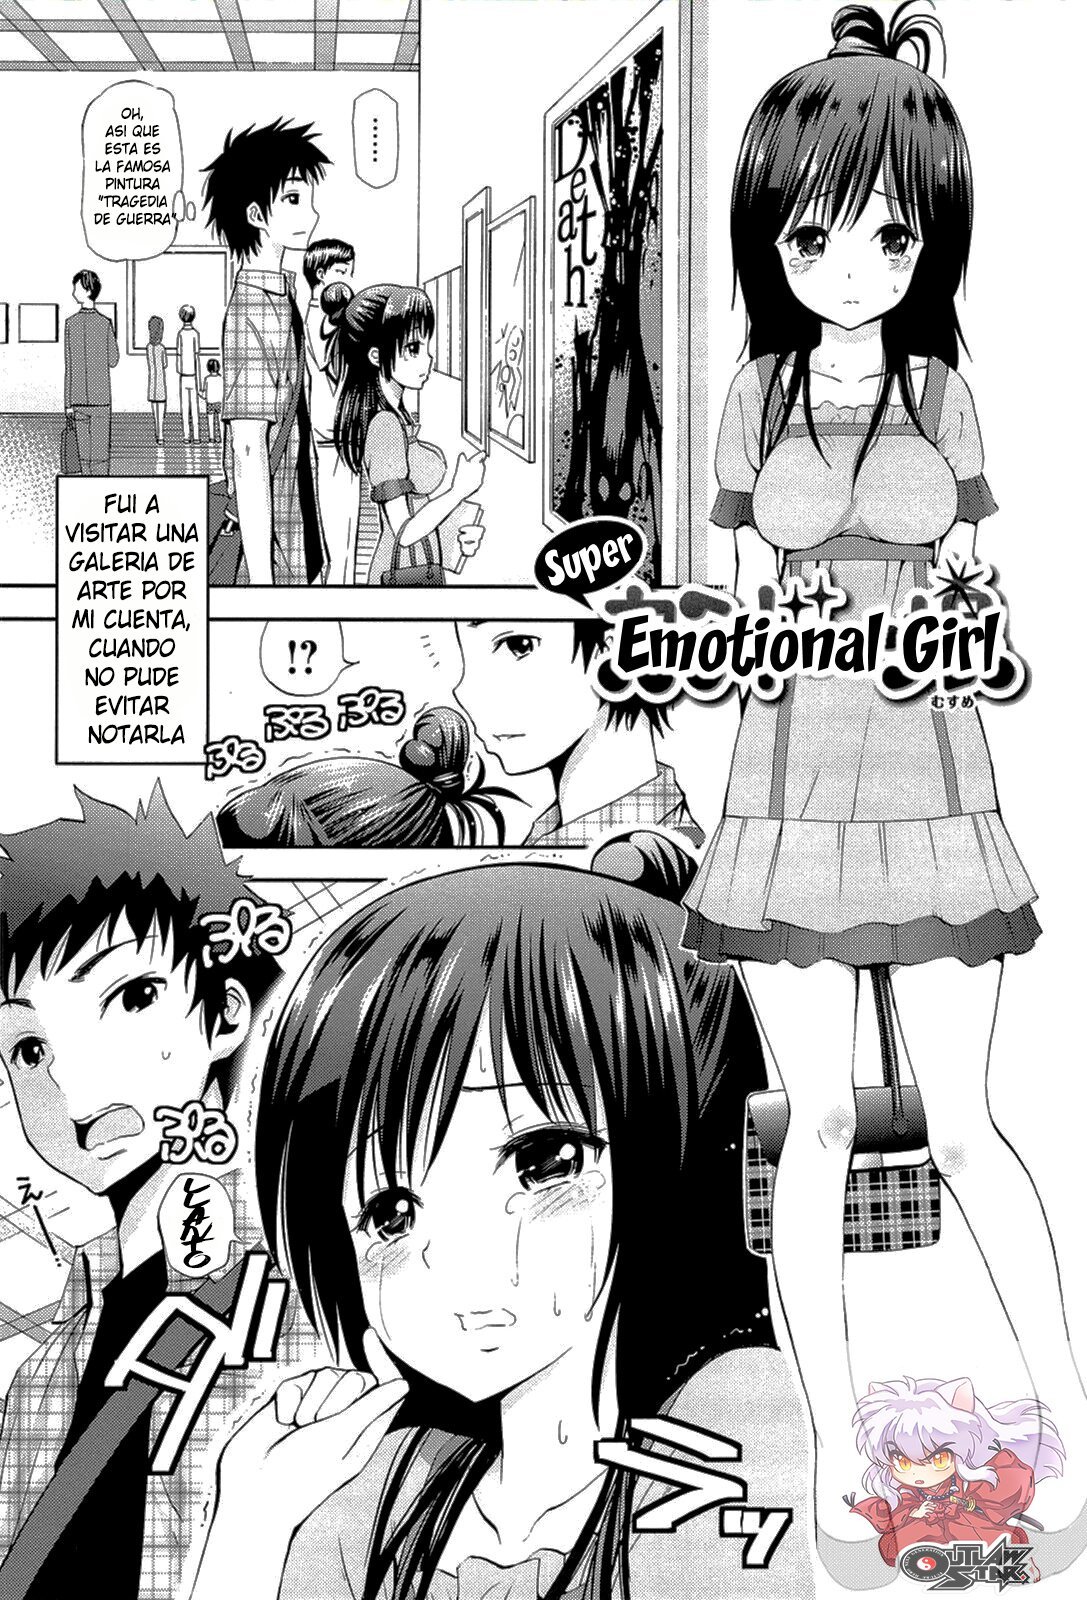 Chica Emocional - 0